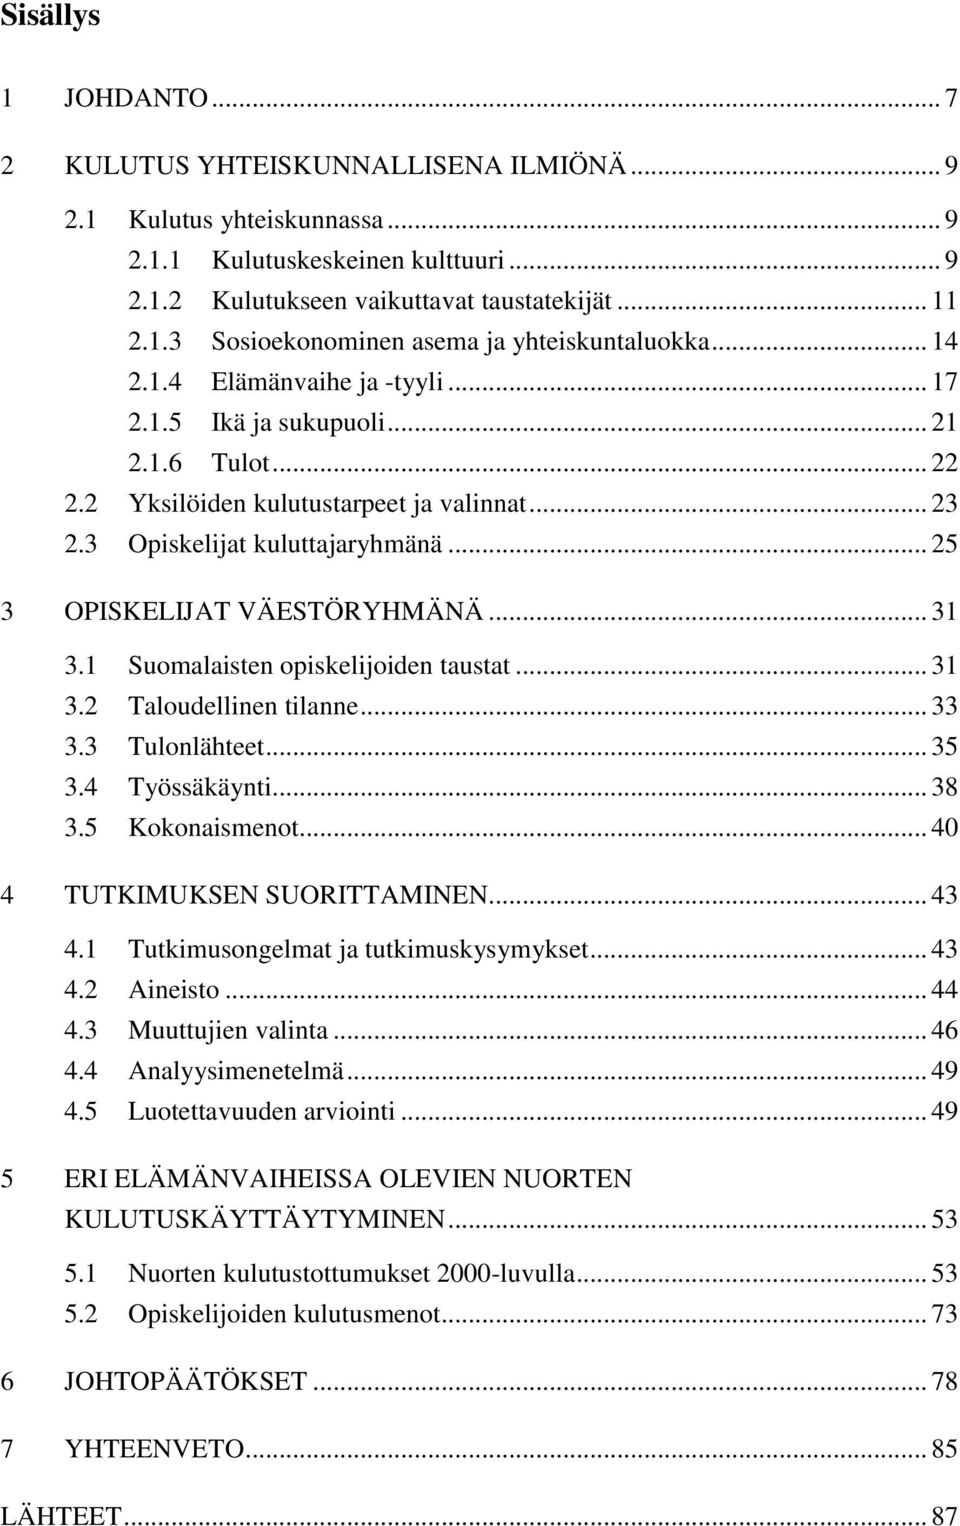 .. 31 3.1 Suomalaisten opiskelijoiden taustat... 31 3.2 Taloudellinen tilanne... 33 3.3 Tulonlähteet... 35 3.4 Työssäkäynti... 38 3.5 Kokonaismenot... 40 4 TUTKIMUKSEN SUORITTAMINEN... 43 4.